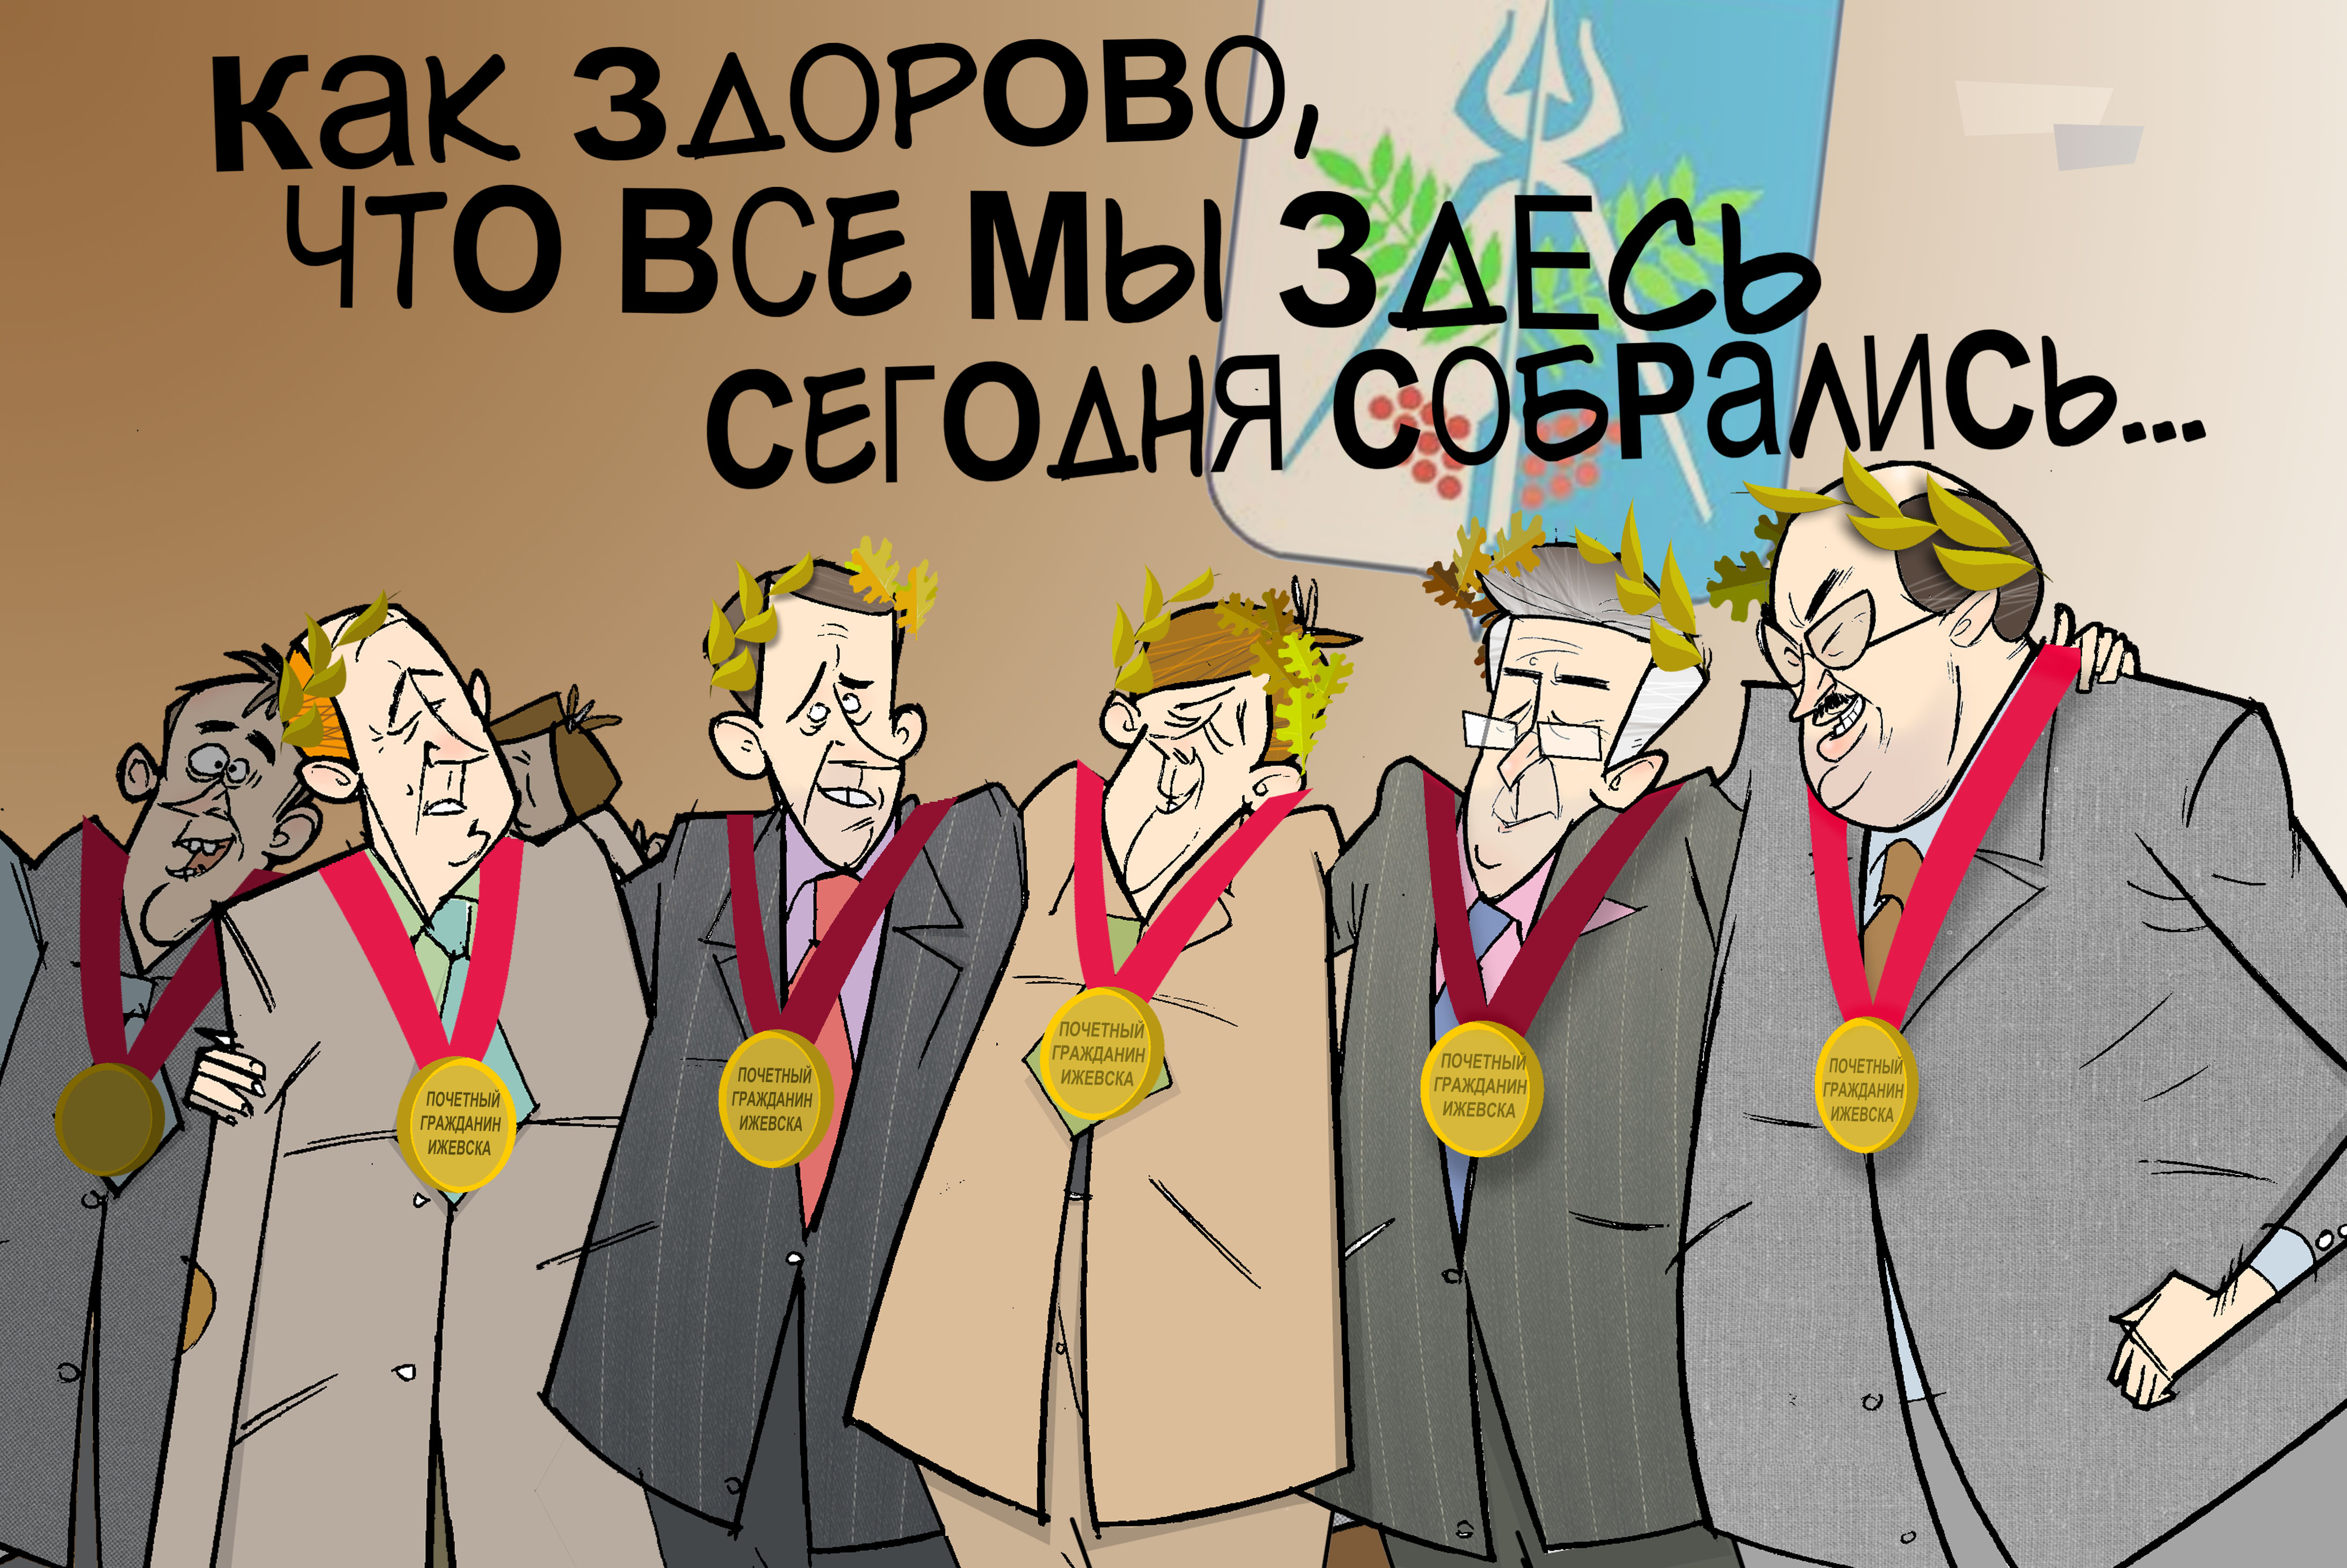 Почётные граждане. #Гордума #Ижевск #Шаталов и Компания © Газета "День" 2014